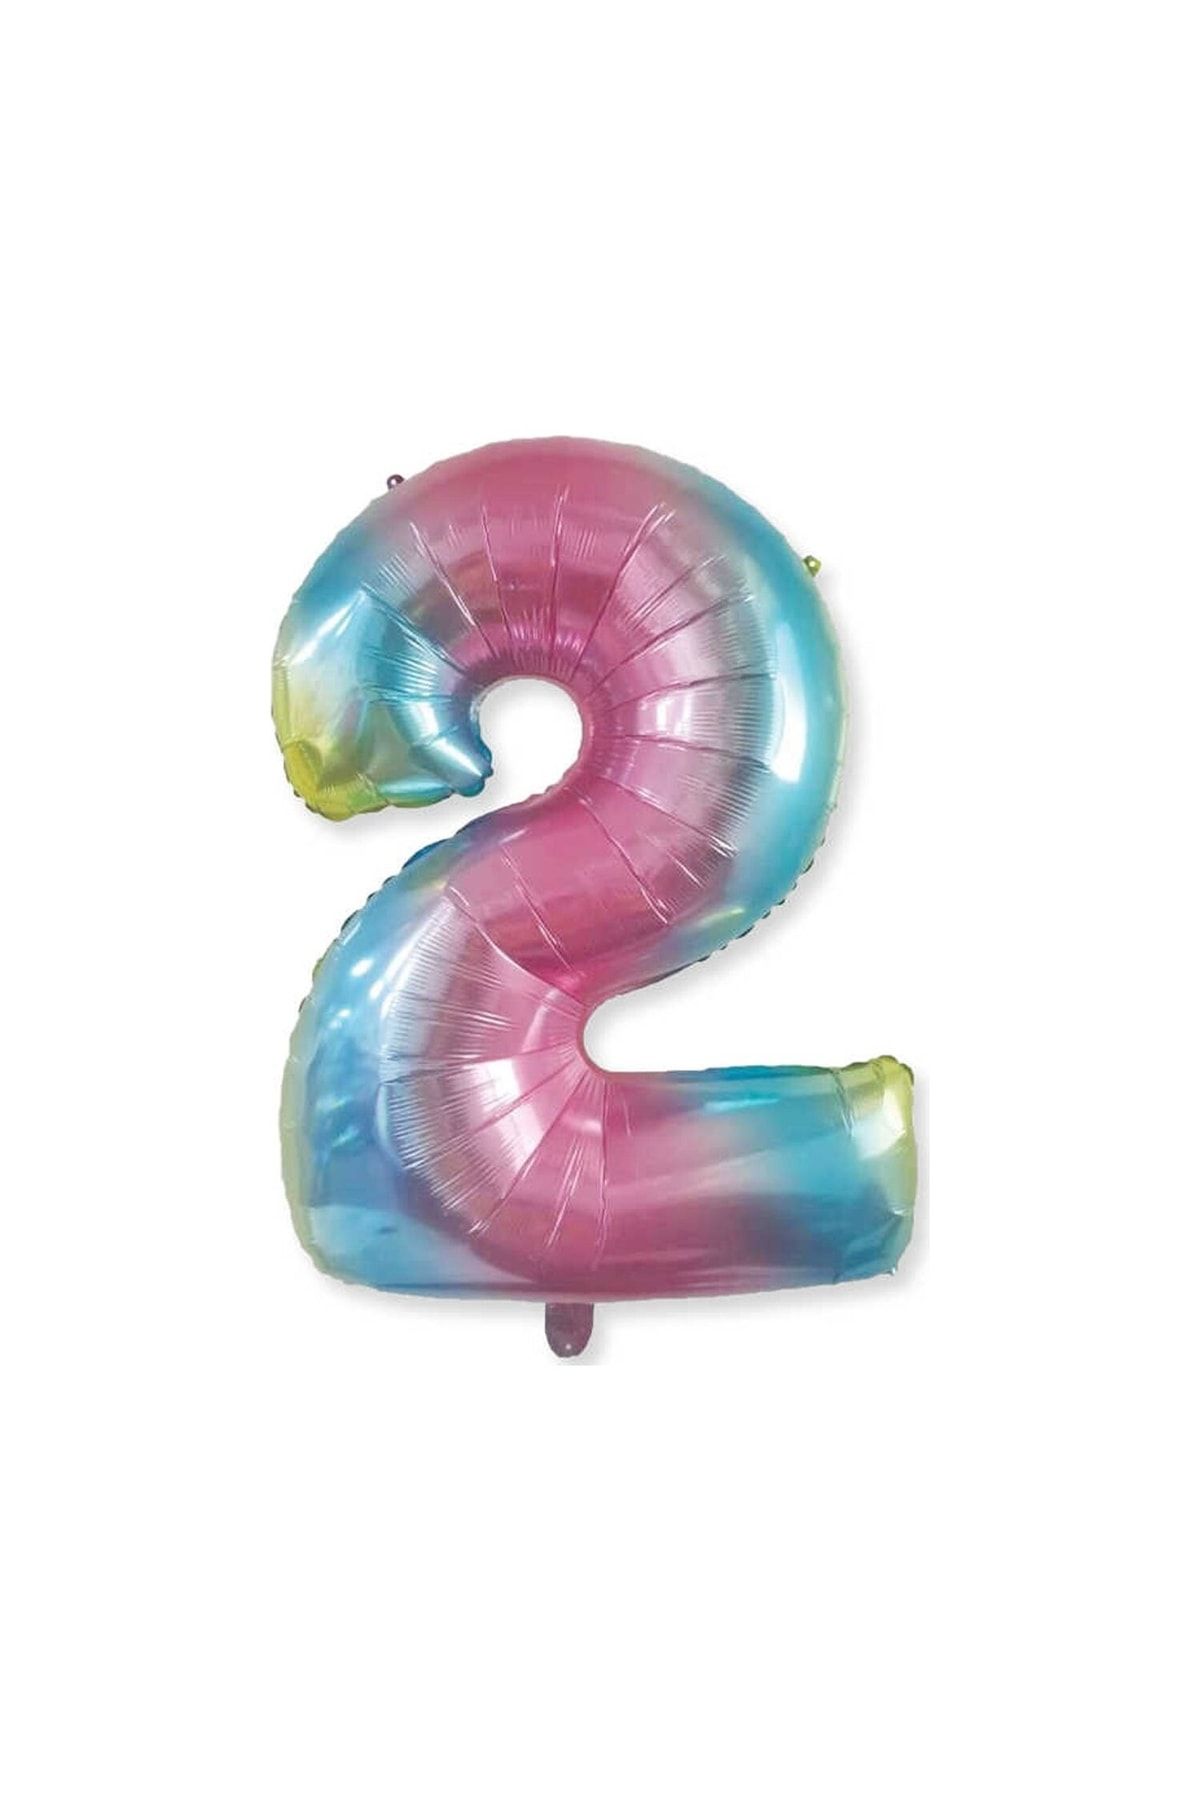 HKNYS 2 Yaş -rakam Sayı Folyo Balon 100 Cm Rengarenk -gökkuşağı Renkli Folyo Balon-helyum Gazı Uyumludur